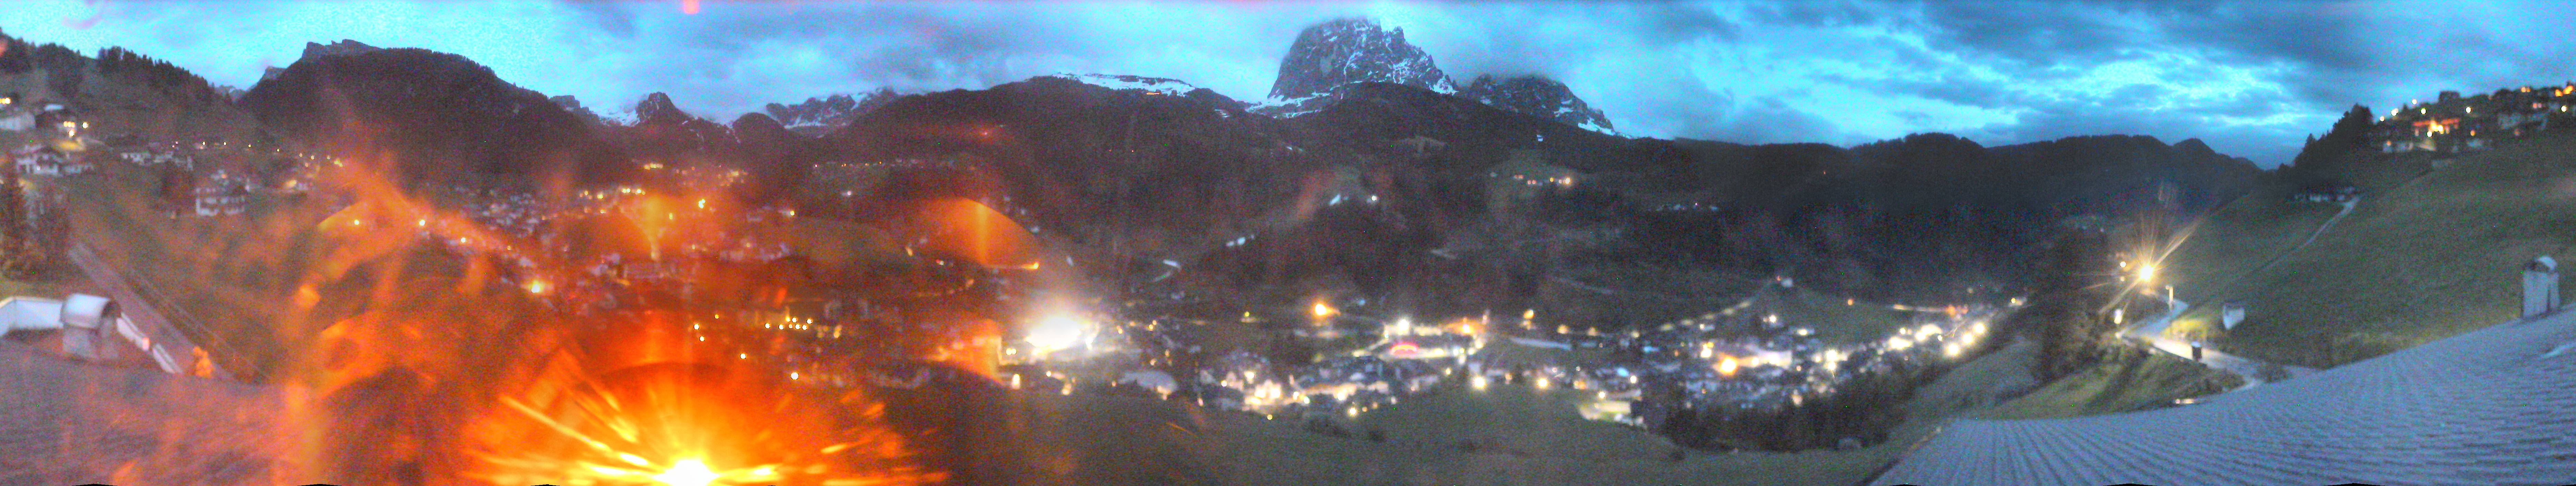 Webcam panoramica di Santa Cristina - Val Gardena, Dolomiti Superski